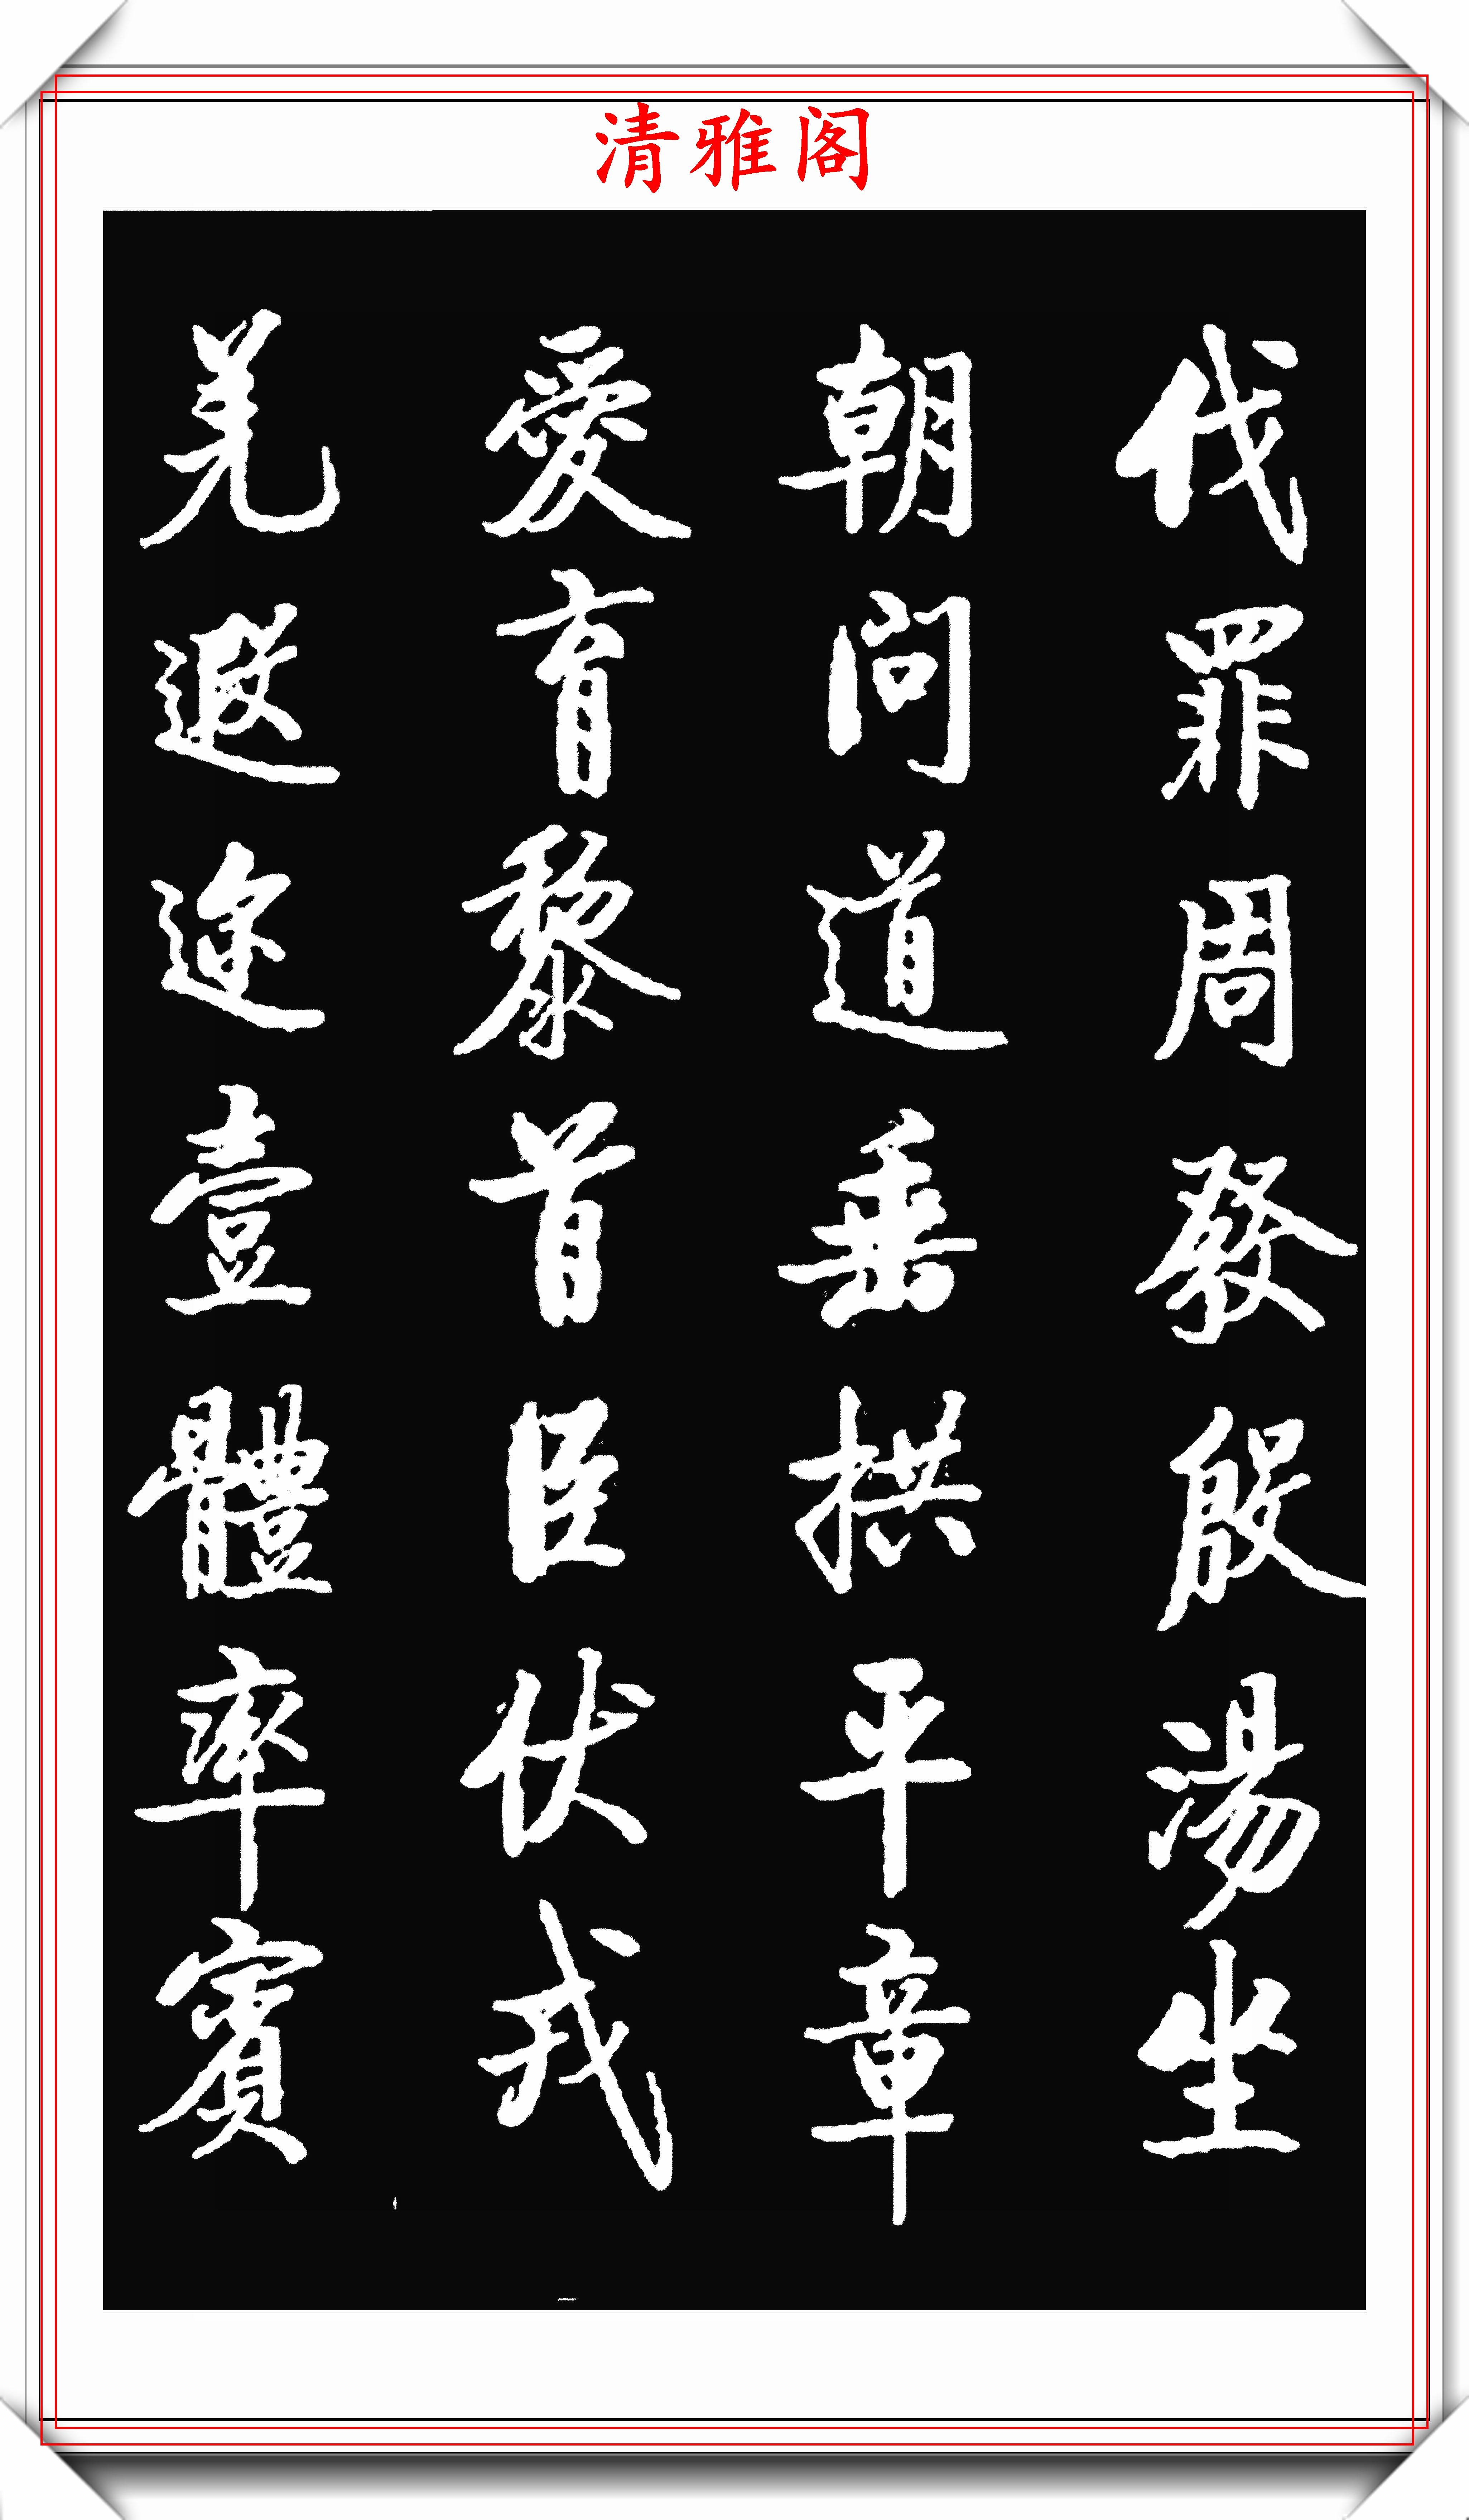 著名书法大家启功,1942年出版的楷书字帖欣赏,学启体的巅峰字帖